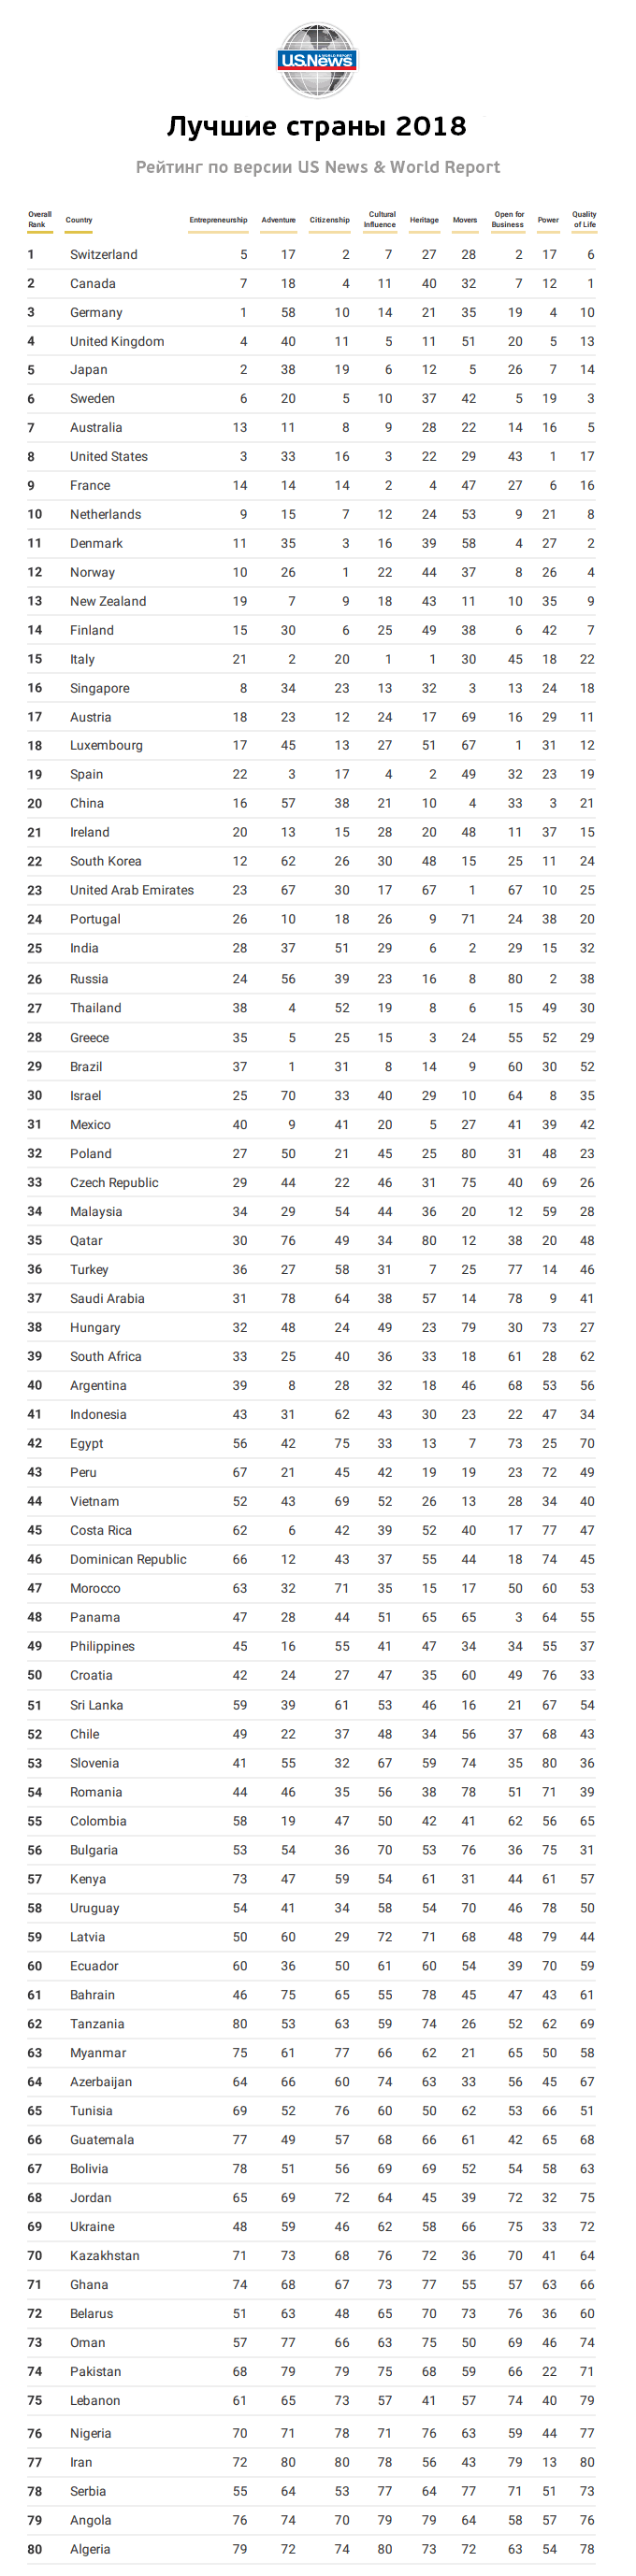 Rangordning af lande efter levestandard 2018-tabel, fuld liste